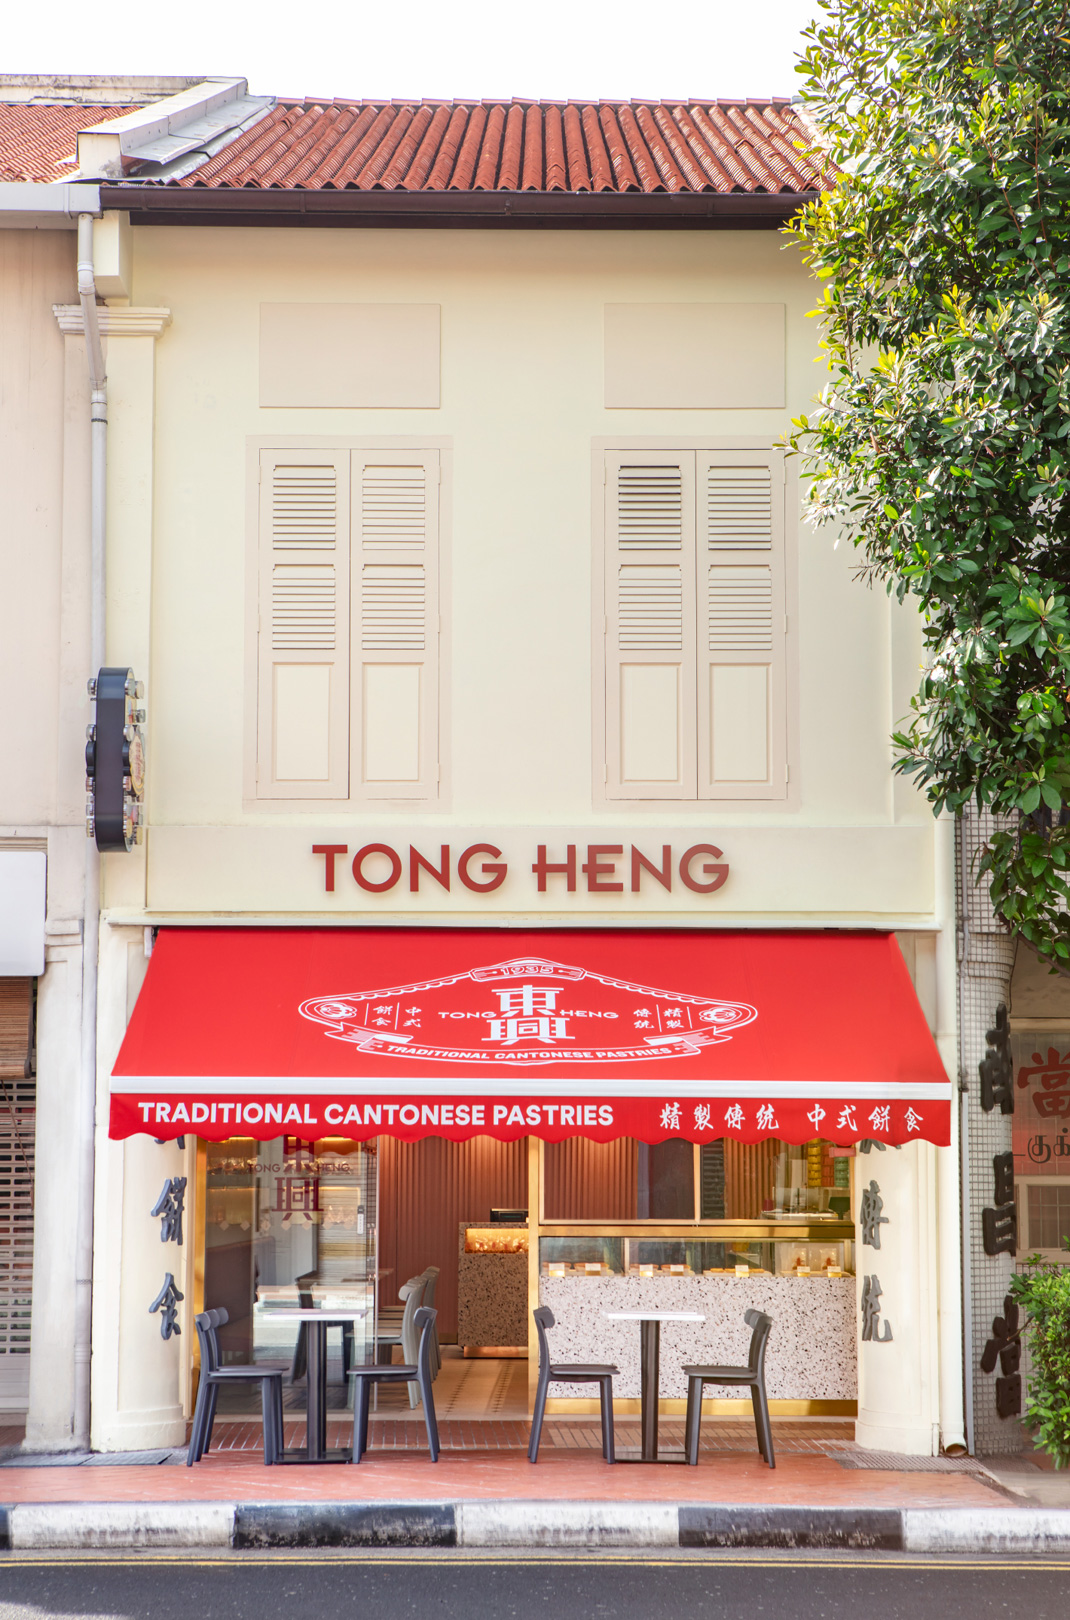 东兴TONG HENG 香港 港式 包装设计 插图设计 字体设计 logo设计 vi设计 空间设计